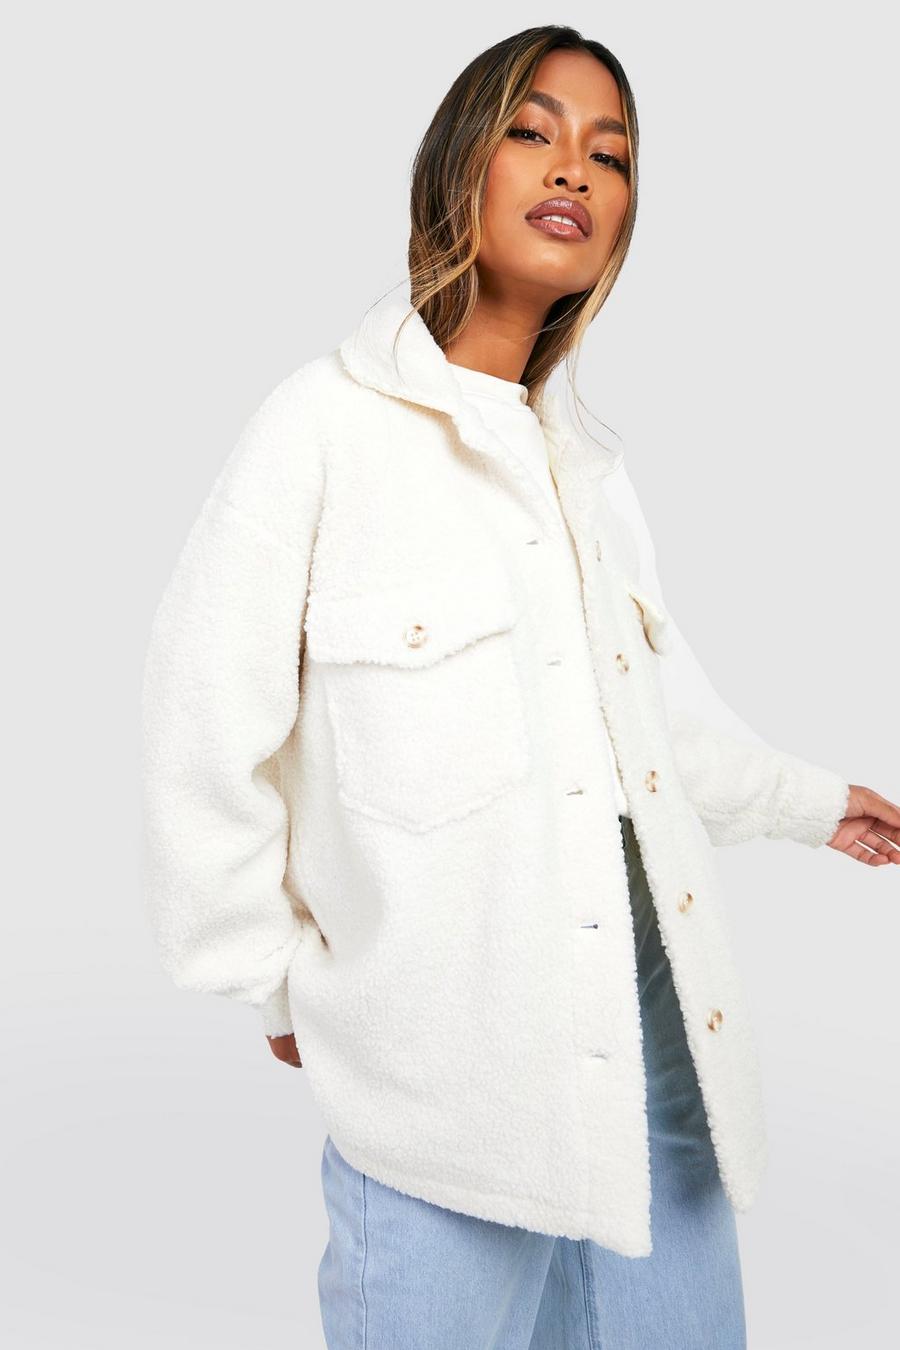 Camisa chaqueta de borreguito sintético suave, Cream white